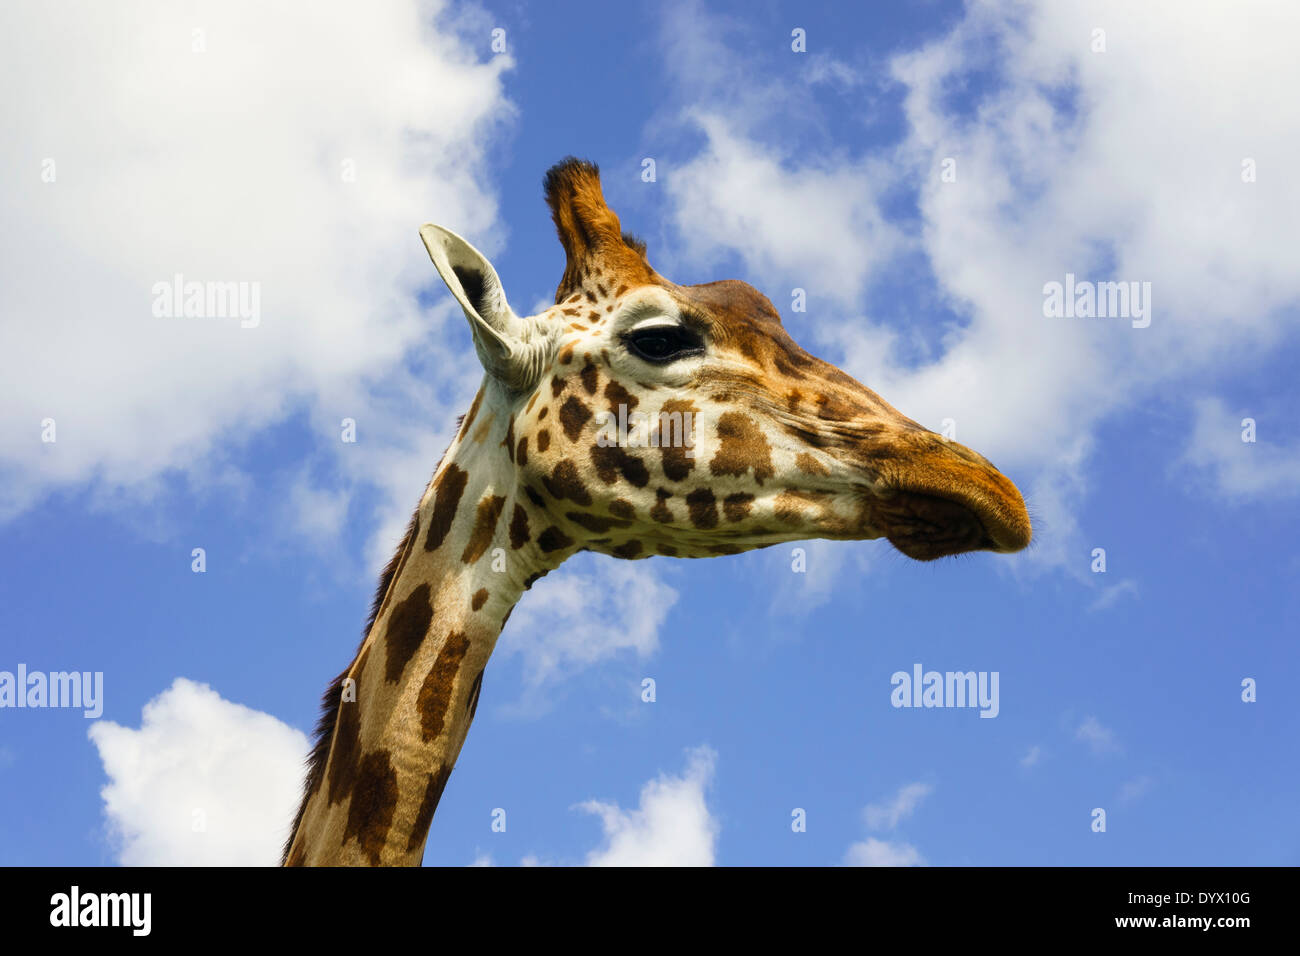 Jirafa macho camelopardalis cabeza y cuello en vista lateral contra un cielo azul Foto de stock